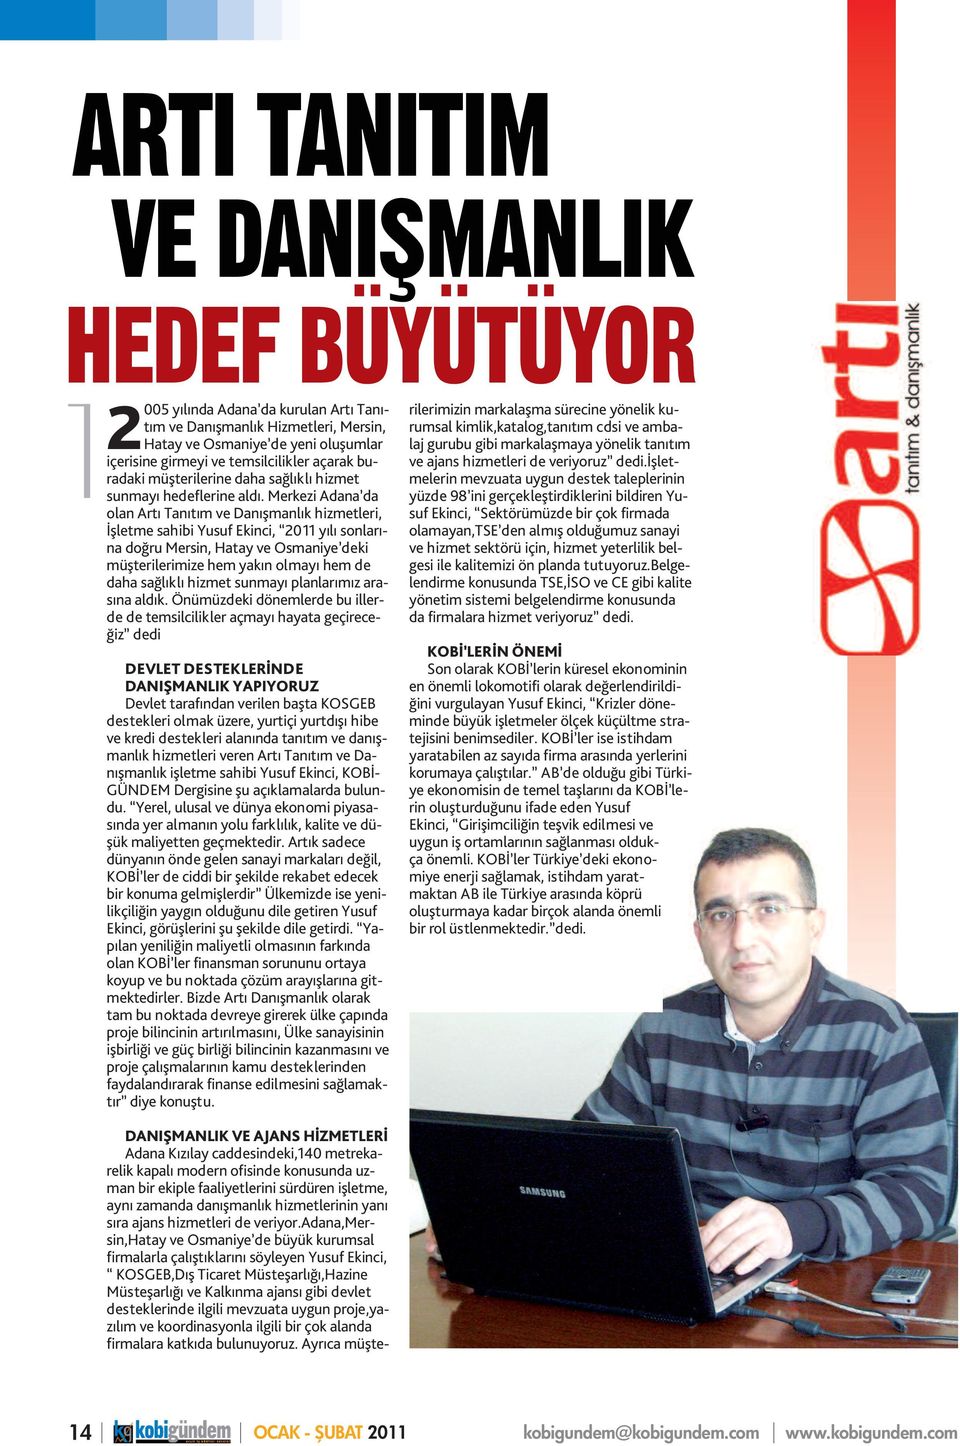 Merkezi Adana da olan Artı Tanıtım ve Danışmanlık hizmetleri, İşletme sahibi Yusuf Ekinci, 2011 yılı sonlarına doğru Mersin, Hatay ve Osmaniye deki müşterilerimize hem yakın olmayı hem de daha